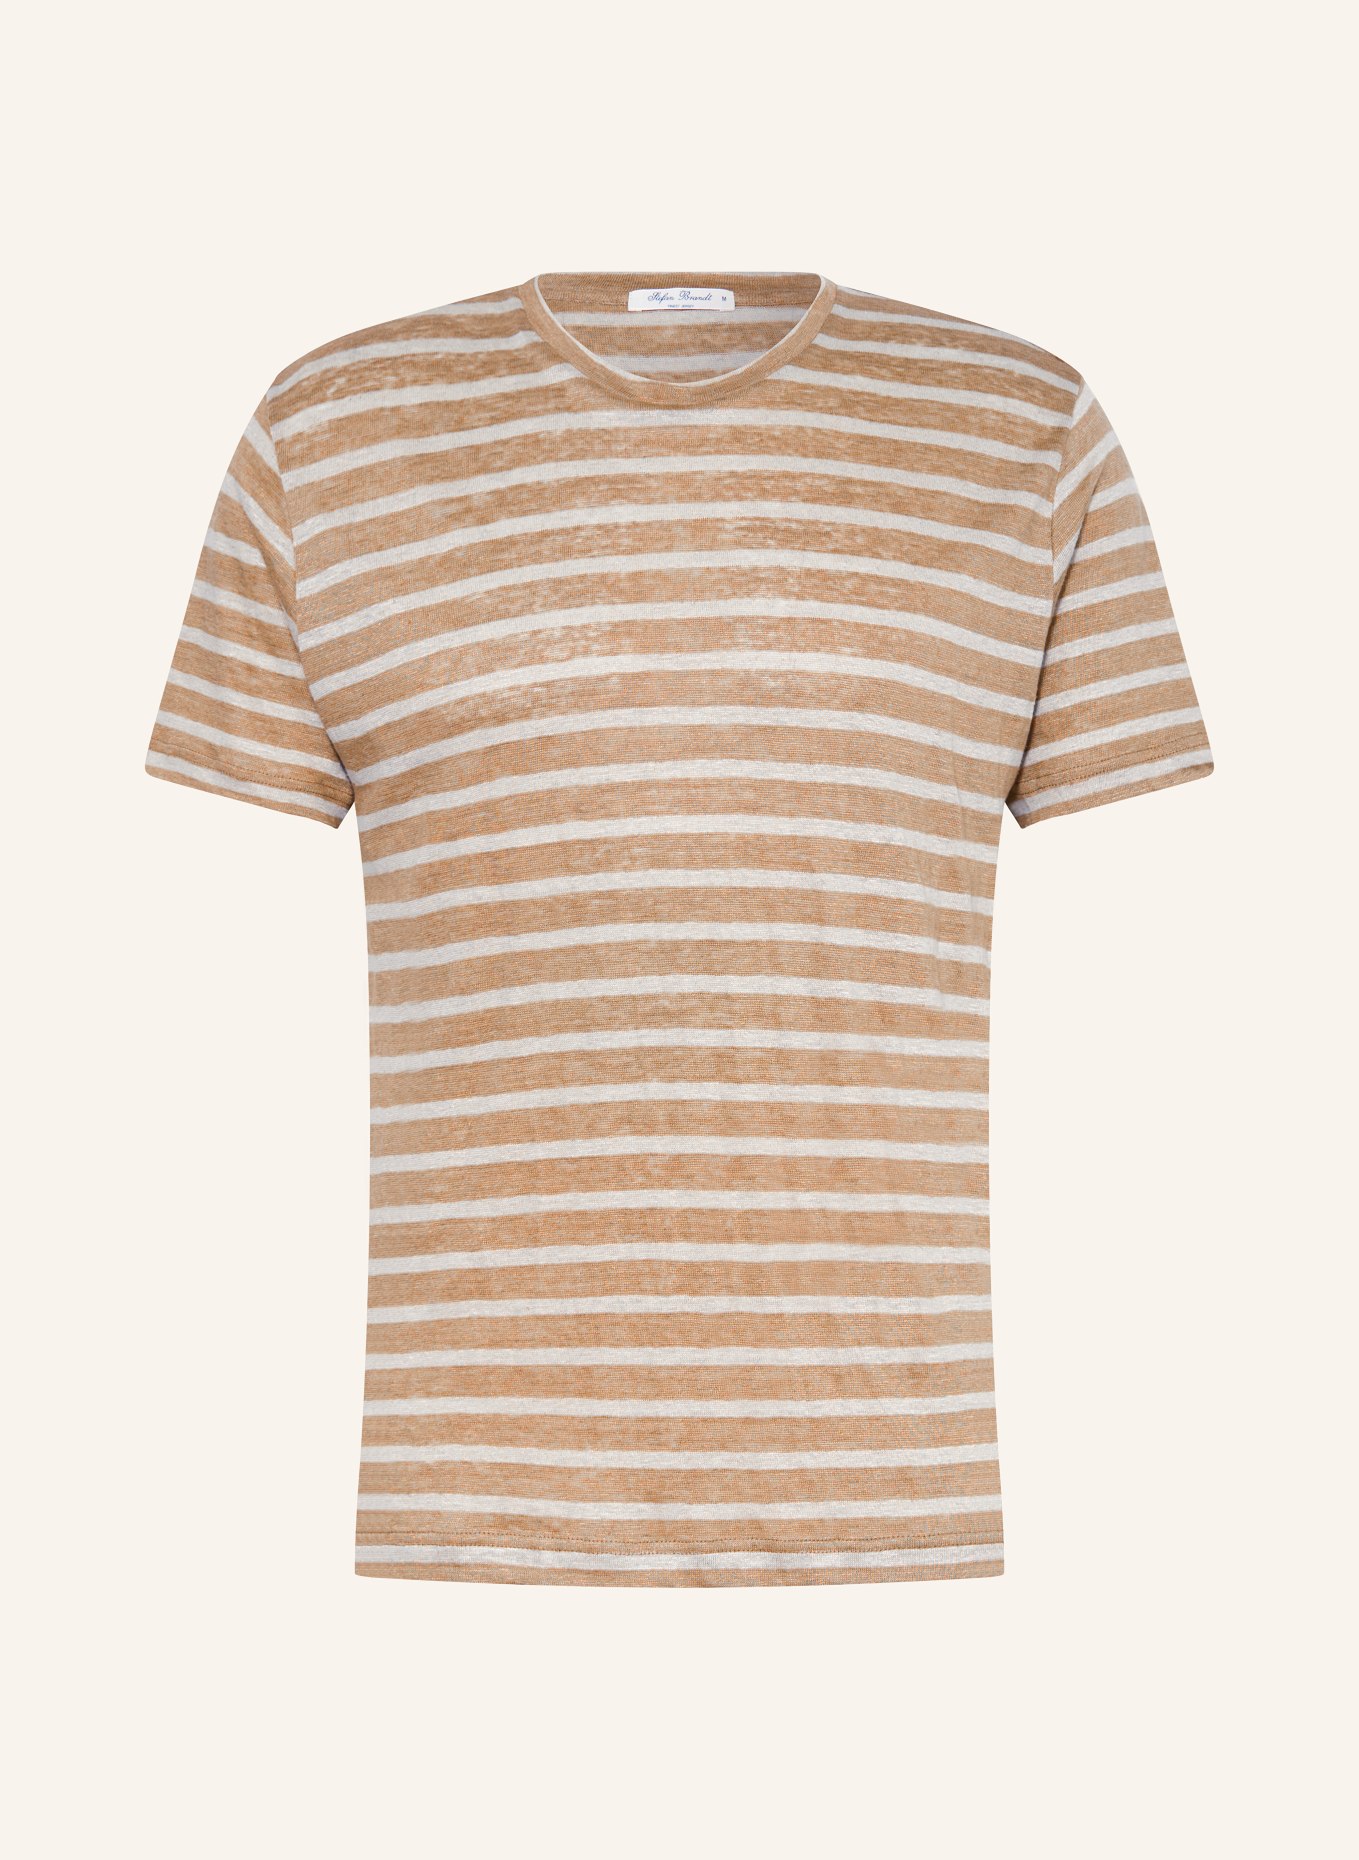 Stefan Brandt T-shirt made of linen, Color: BEIGE/ CREAM (Image 1)